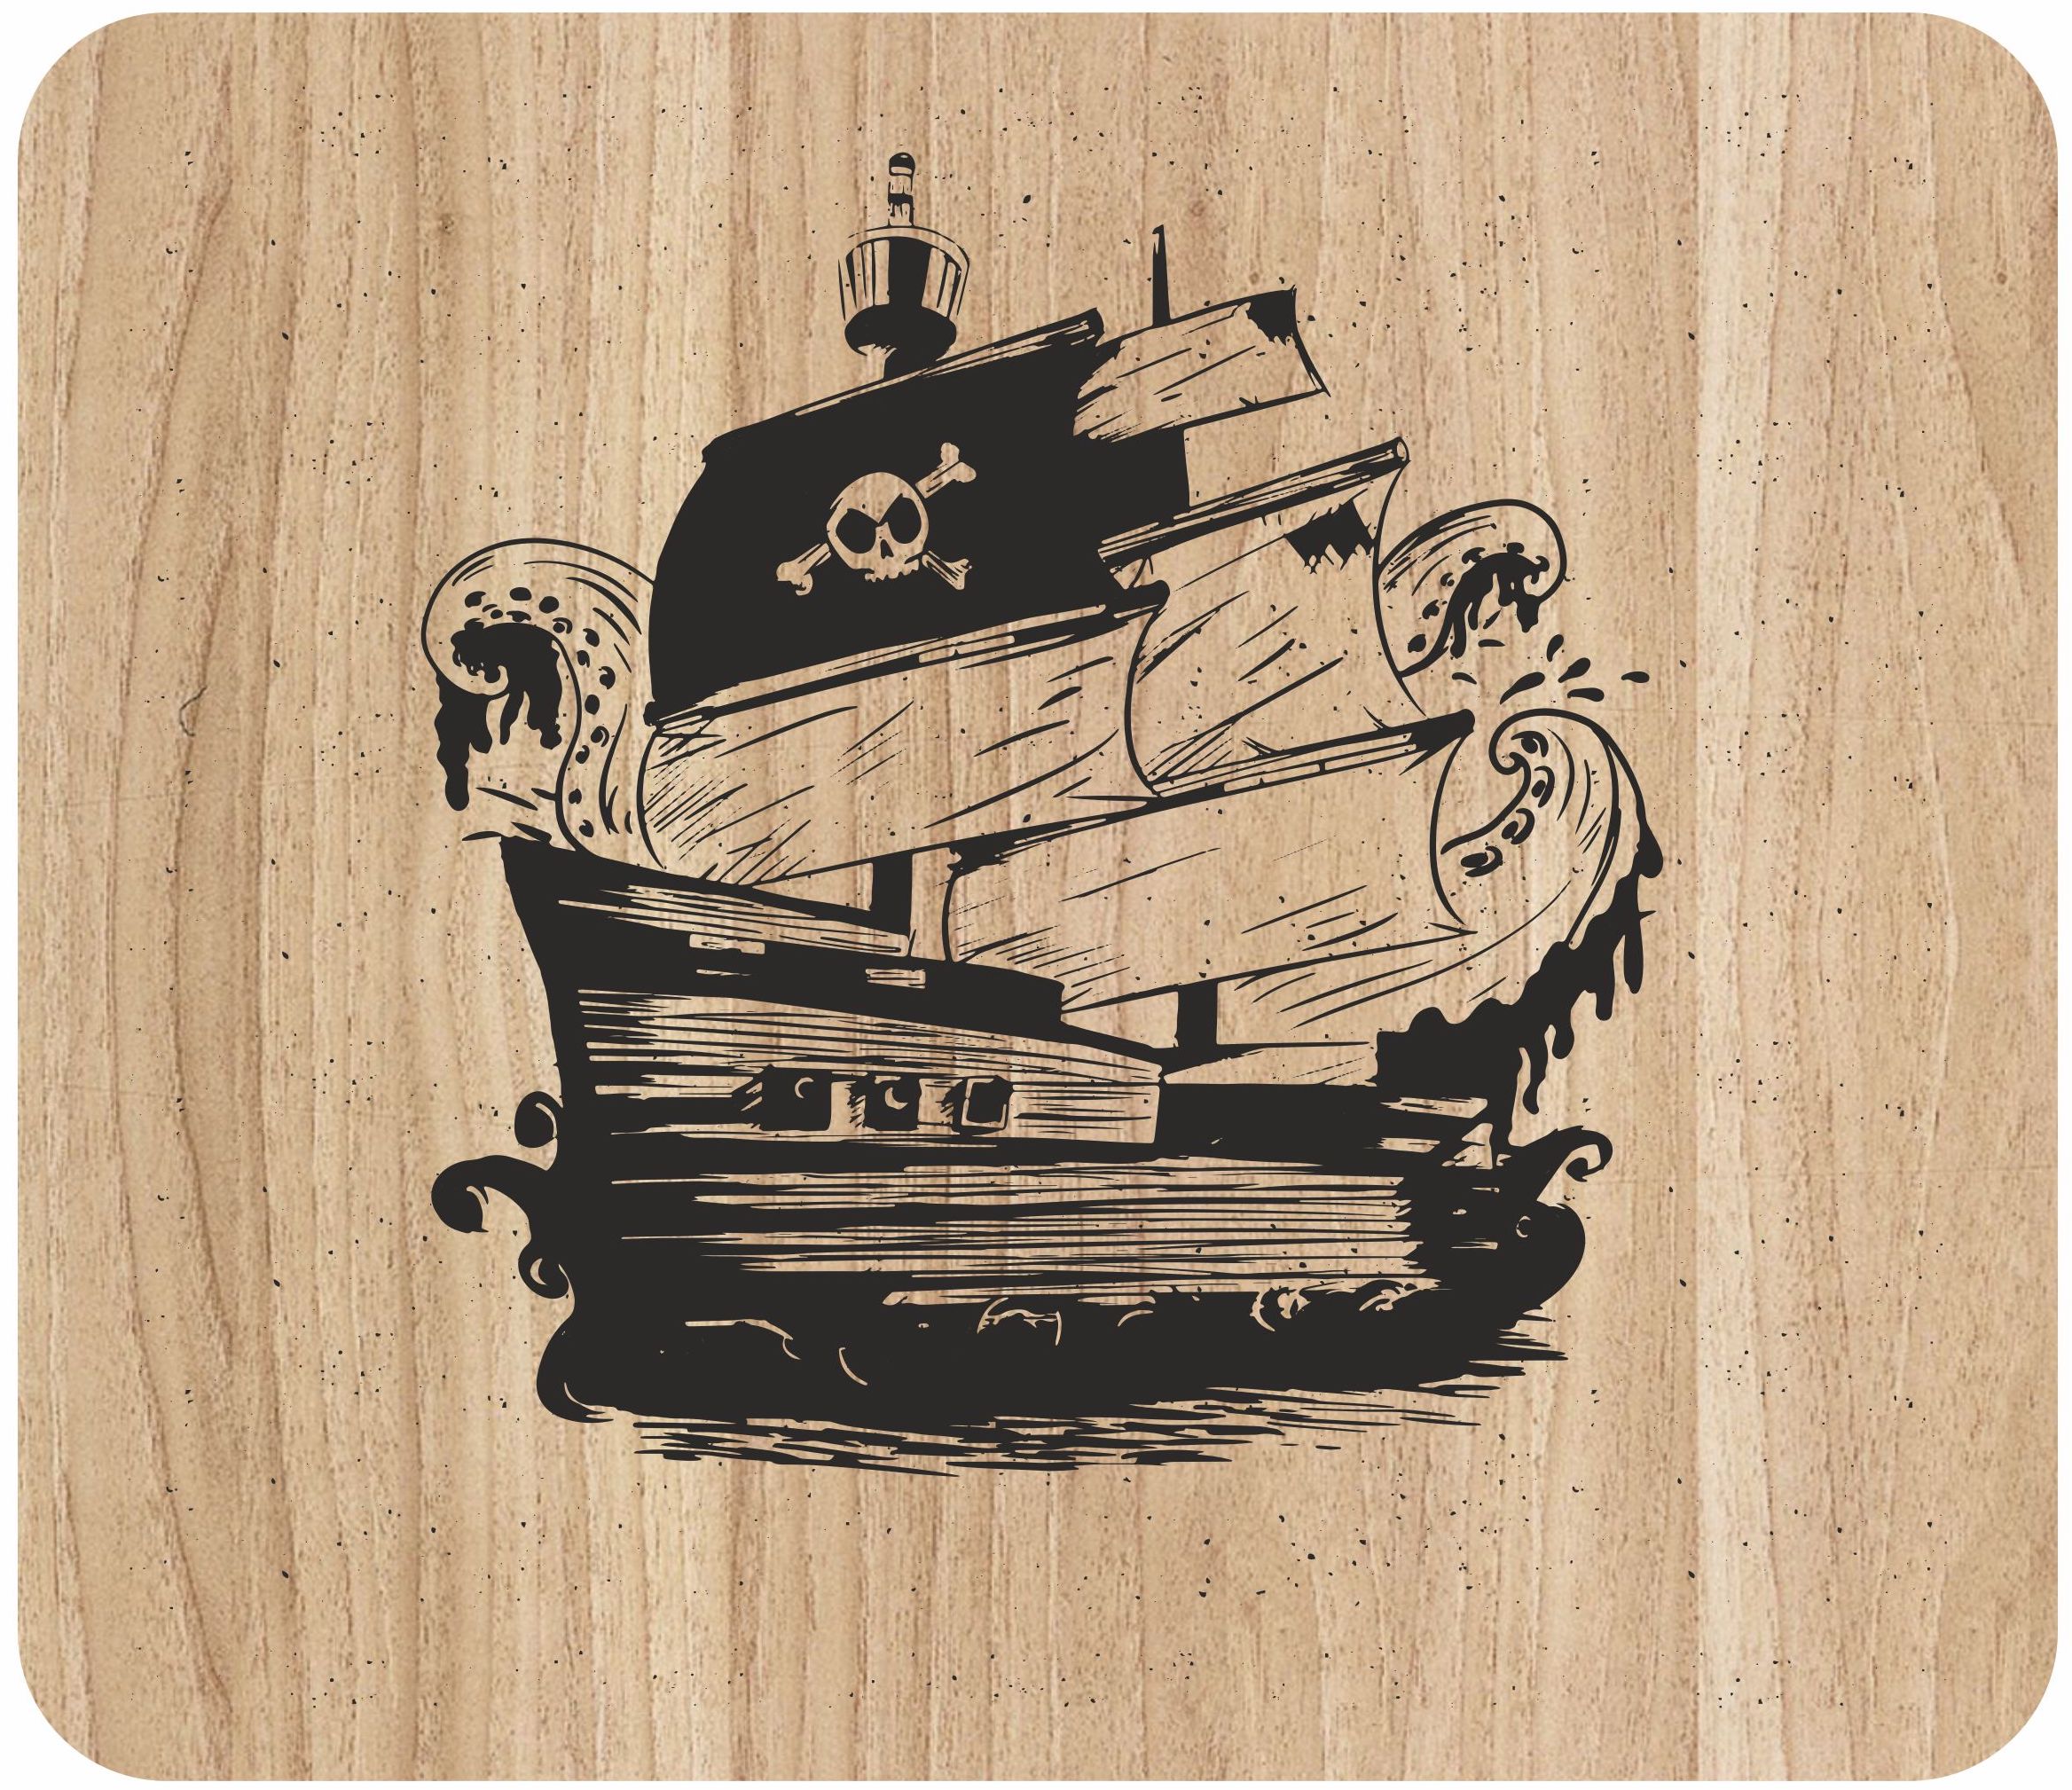 حکاکی لیزری هنر کشتی دزدان دریایی در تخته برش